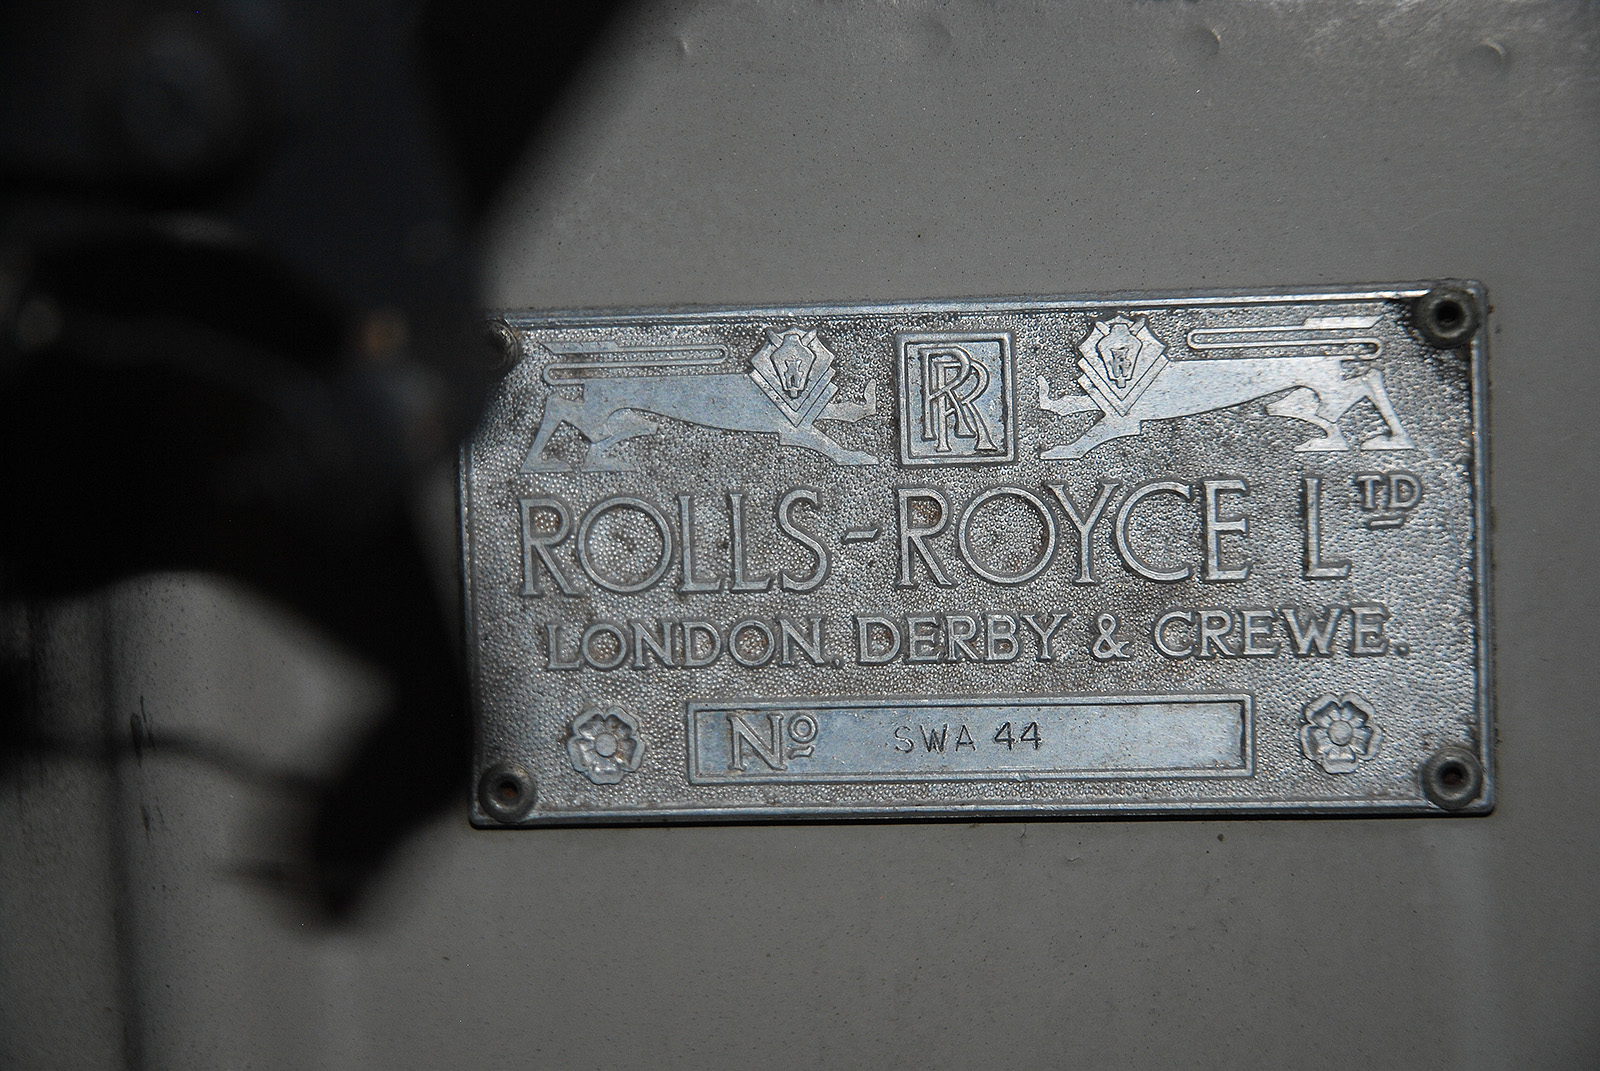 1956 rolls-royce silver cloud i standard steel